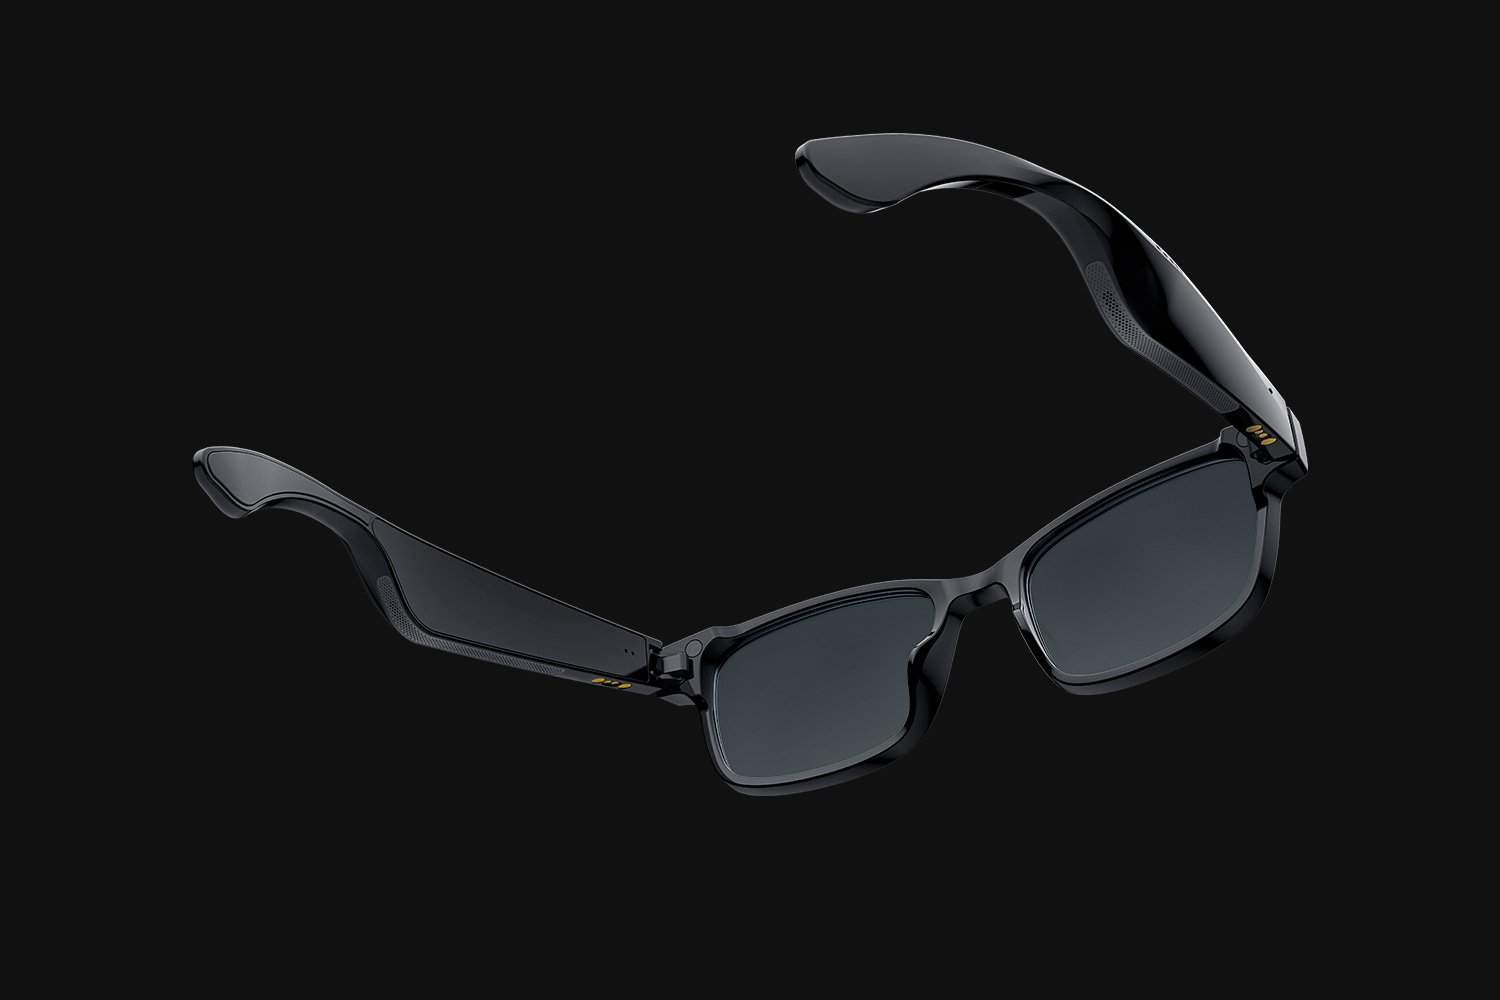 Razer RZ82-03630400-R3M1 occhiali intelligenti Bluetooth [RZ82-03630400-R3M1]